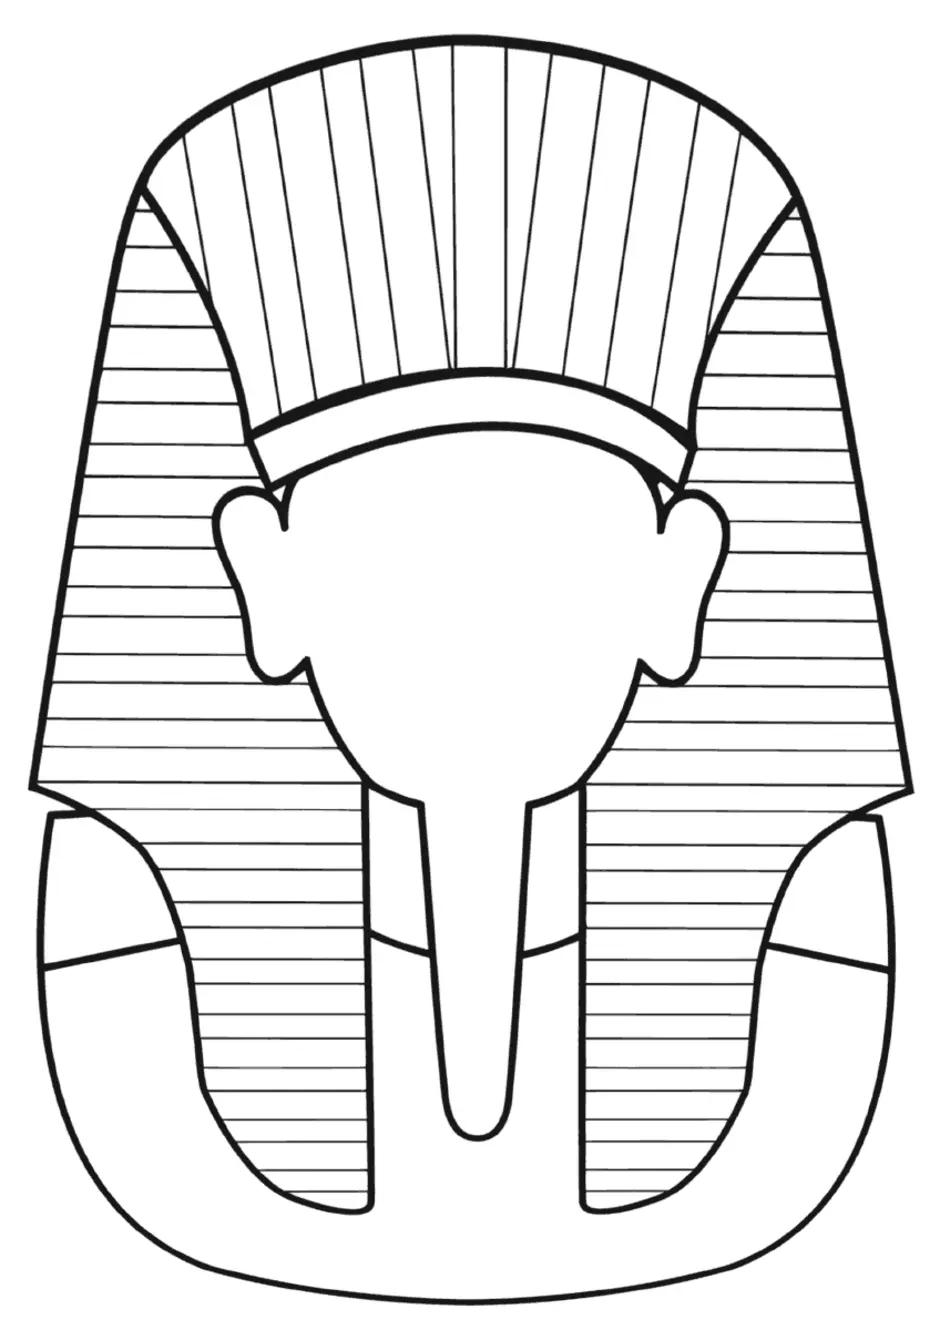 Короны фараонов древнего Египта клафт